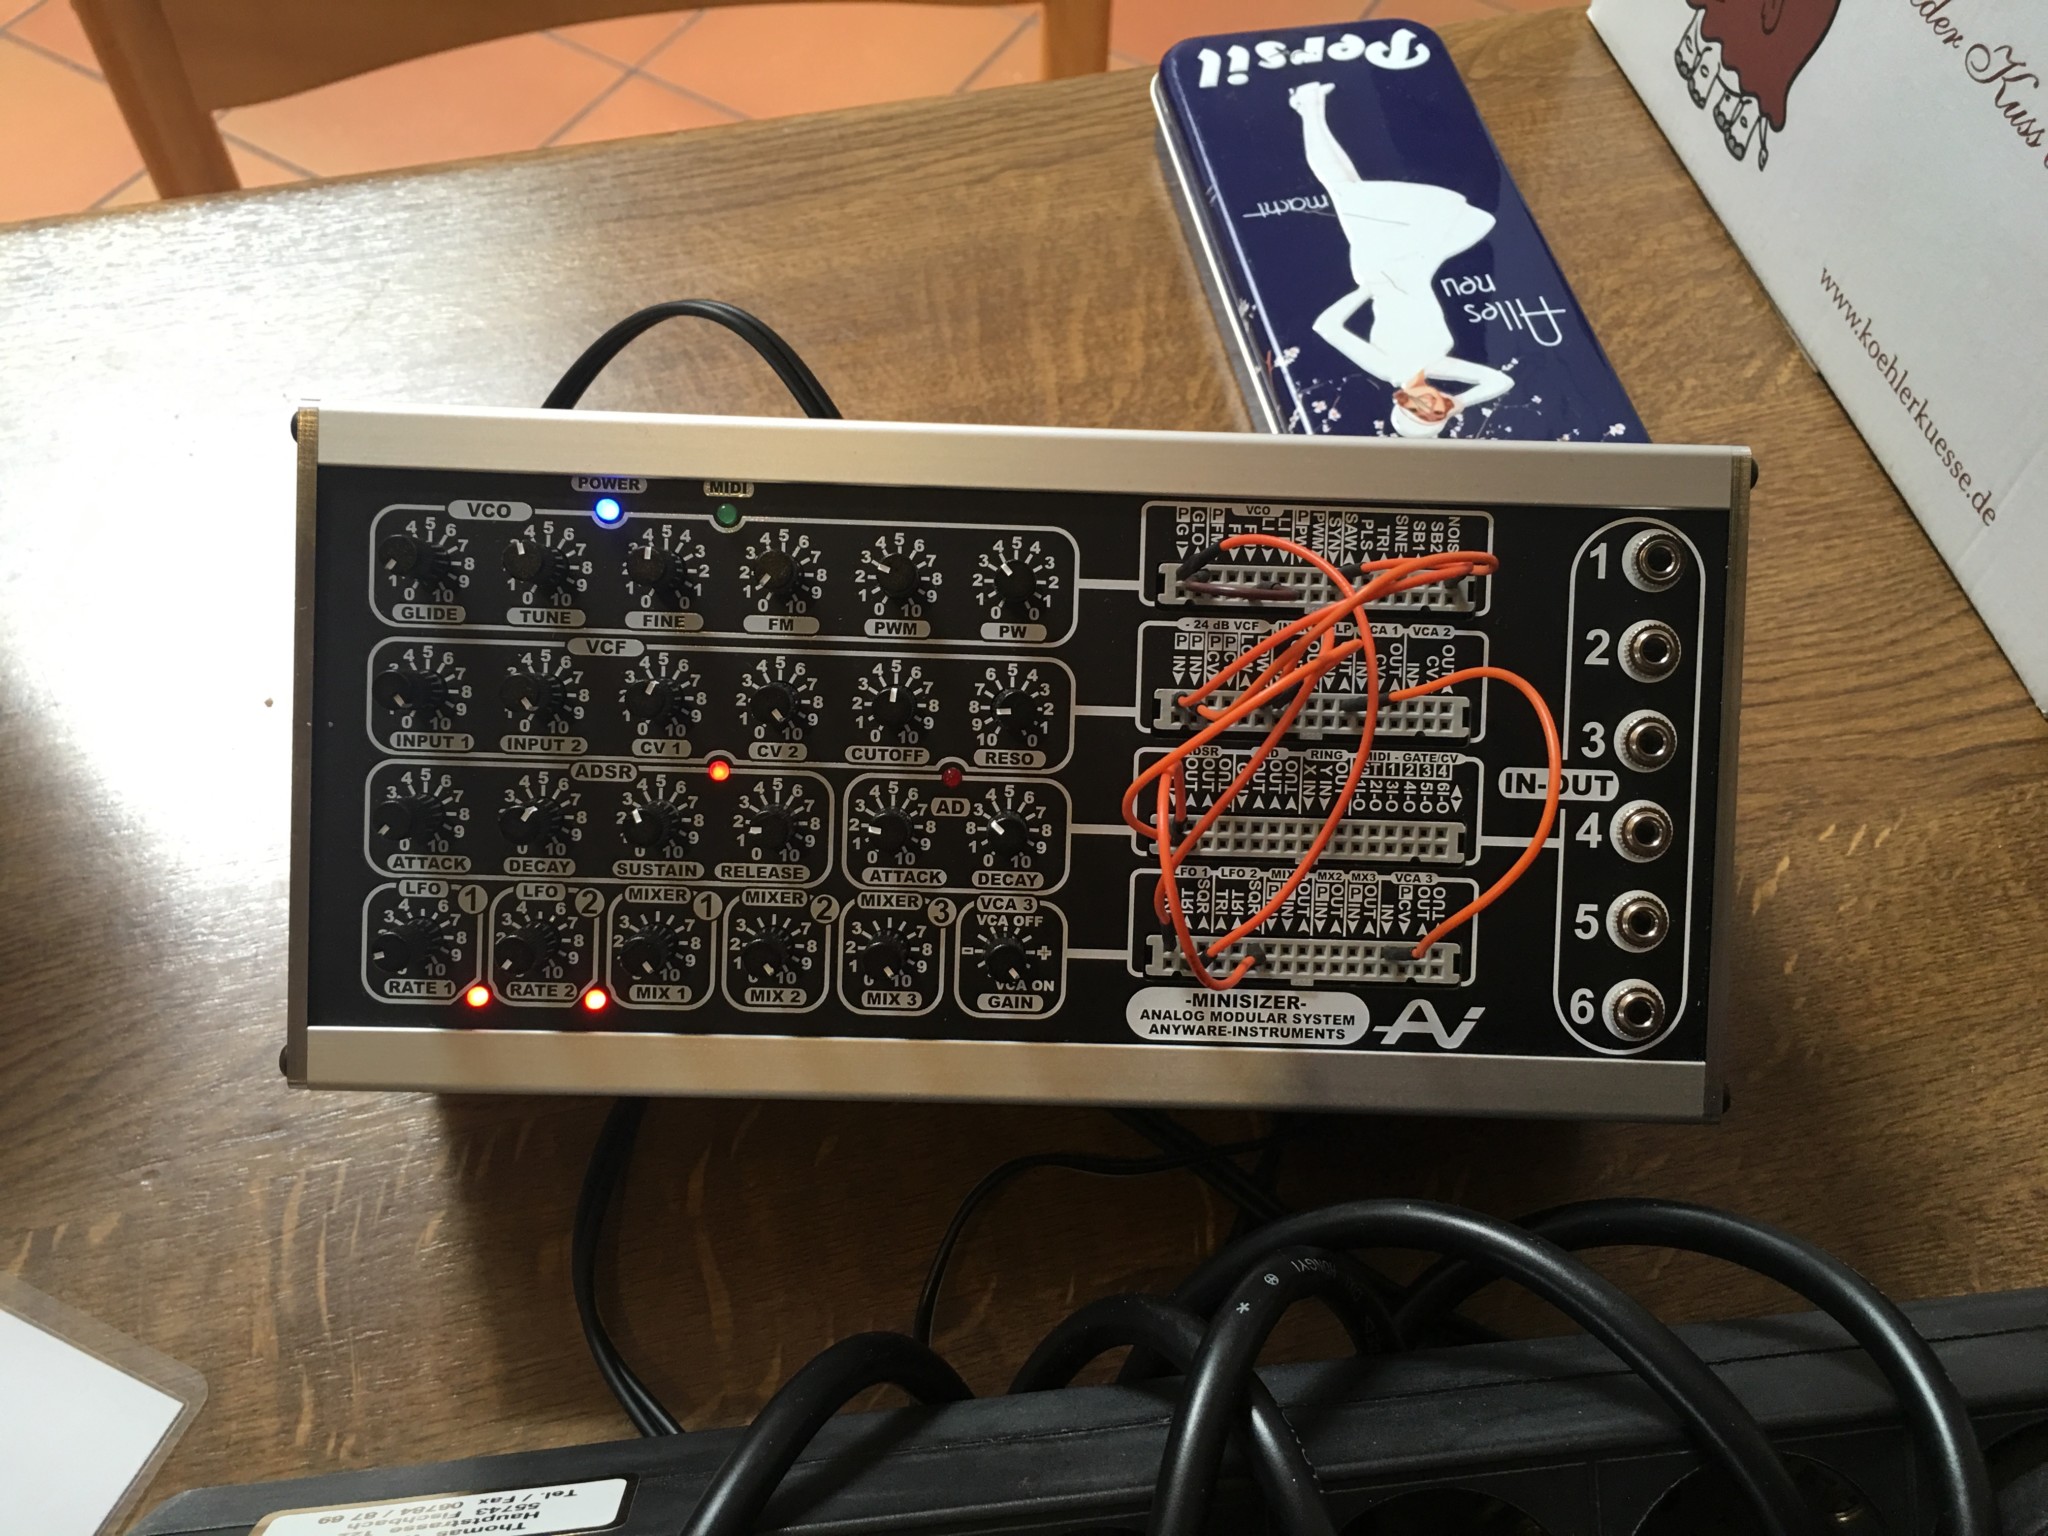 anyware minisizer modular synthesizer